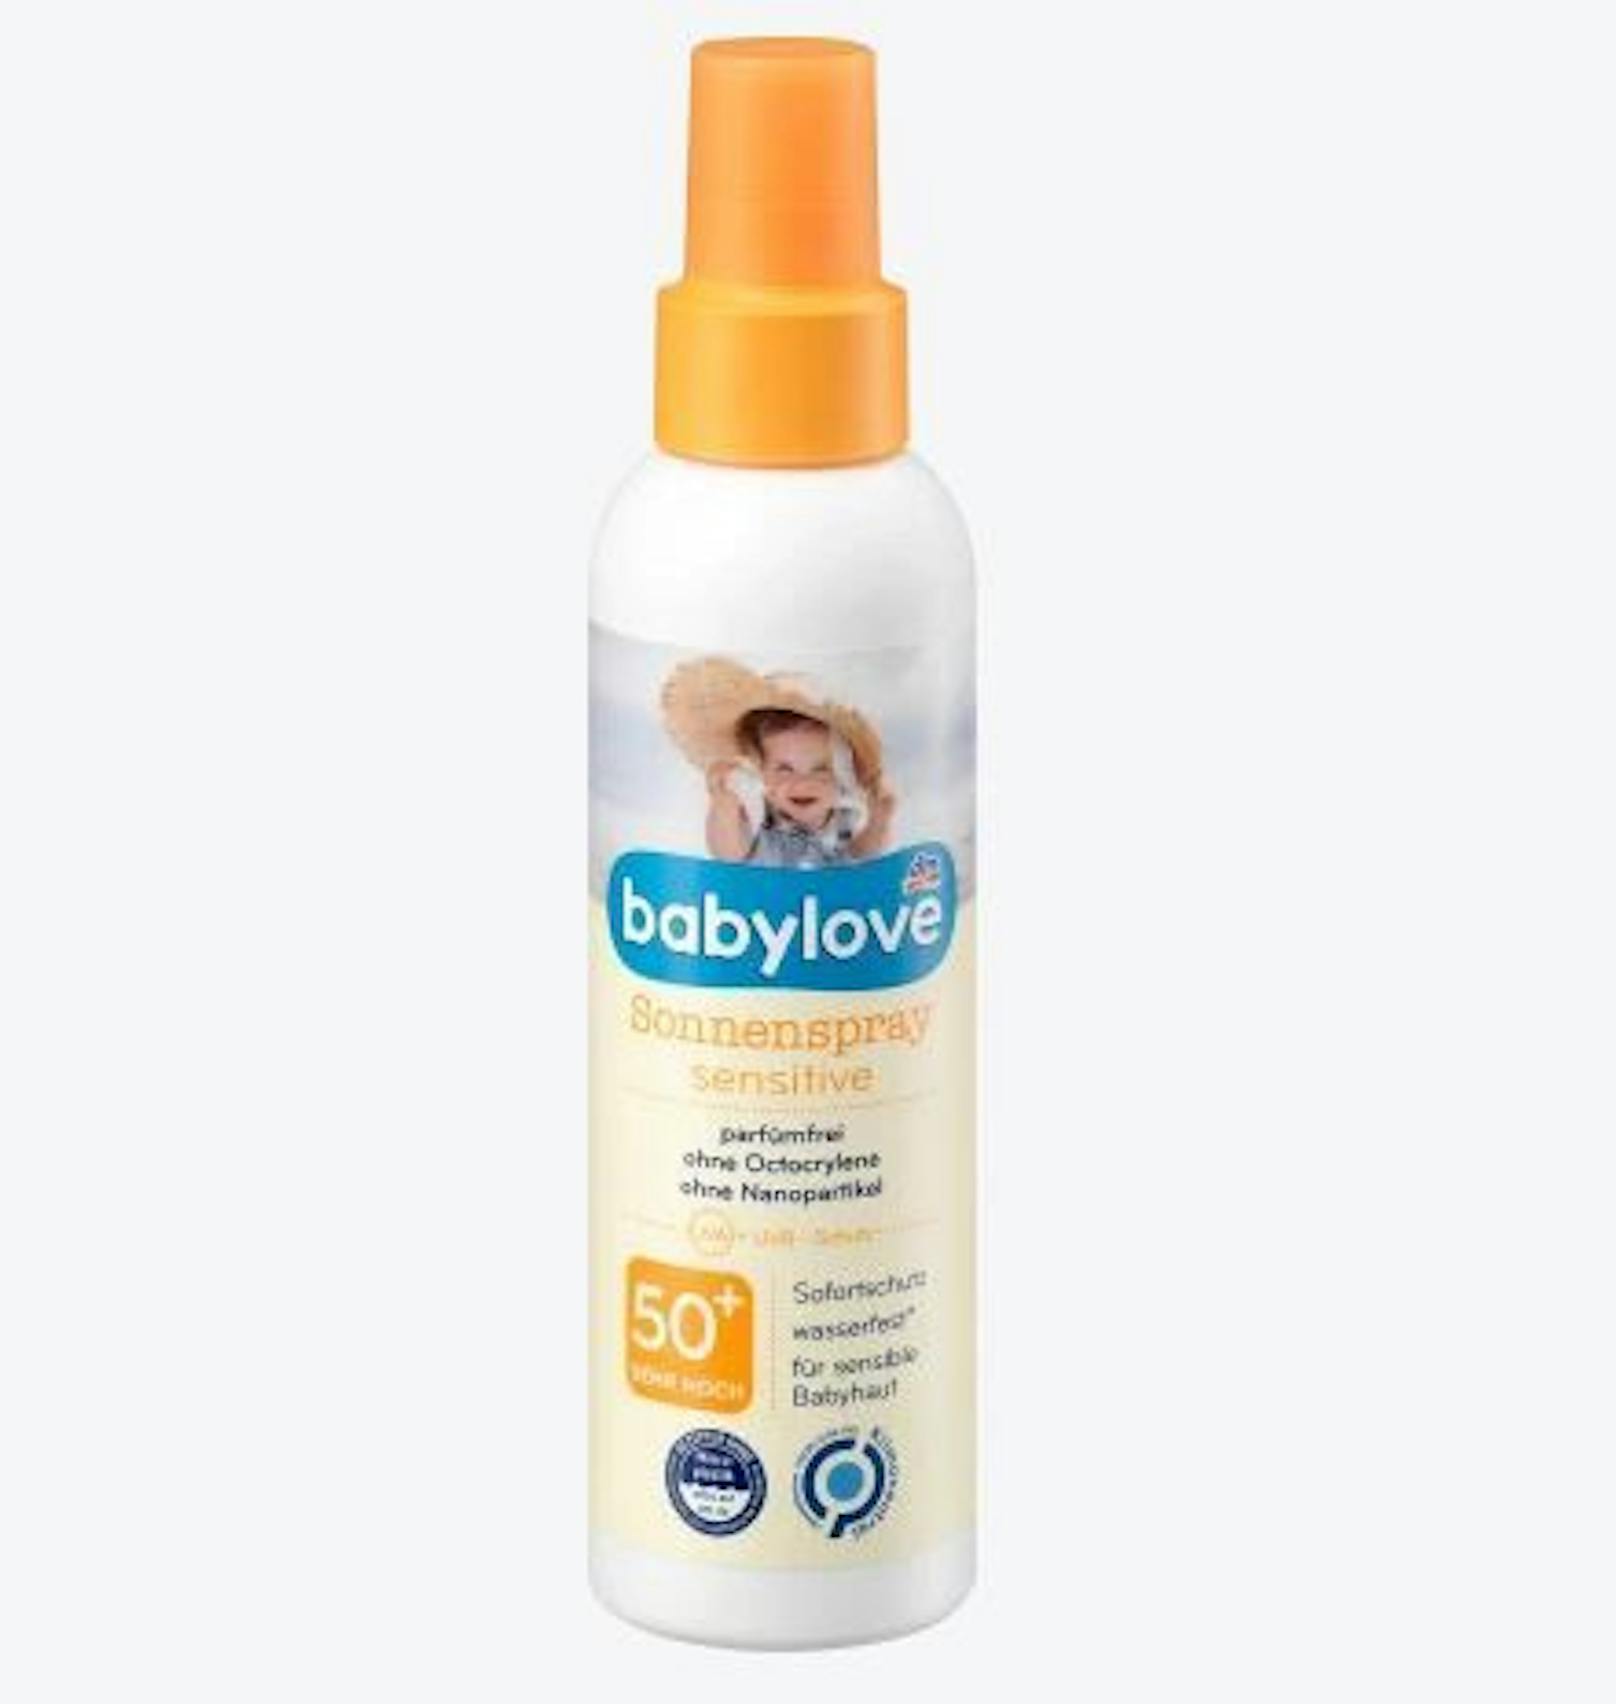 Das Babylove Sonnenspray sensitive von der dm-Eigenmarke kostet 10,90 Euro. Auch hier wird auf chemische Filter gesetzt, aber sonst keine Duftstoffe oder anderes Bedenkliches.